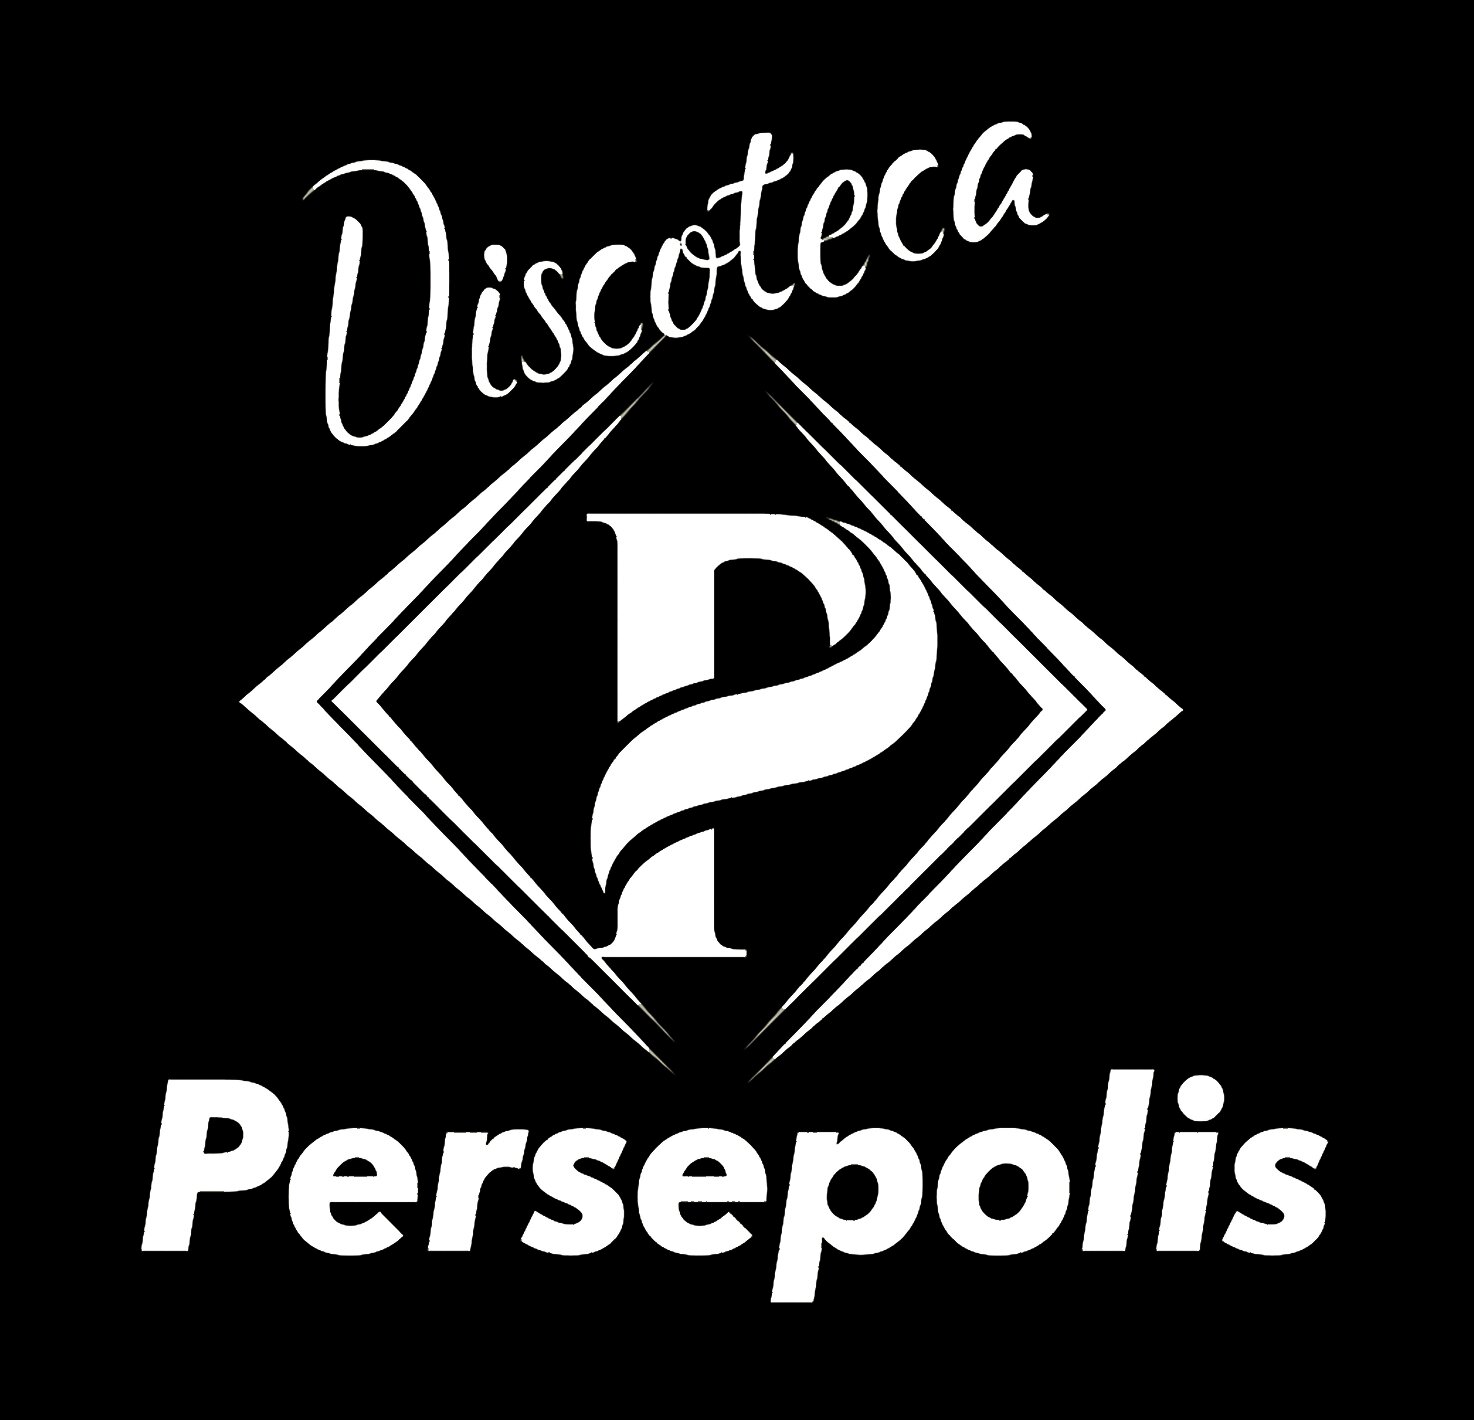 Discoteca persépolis